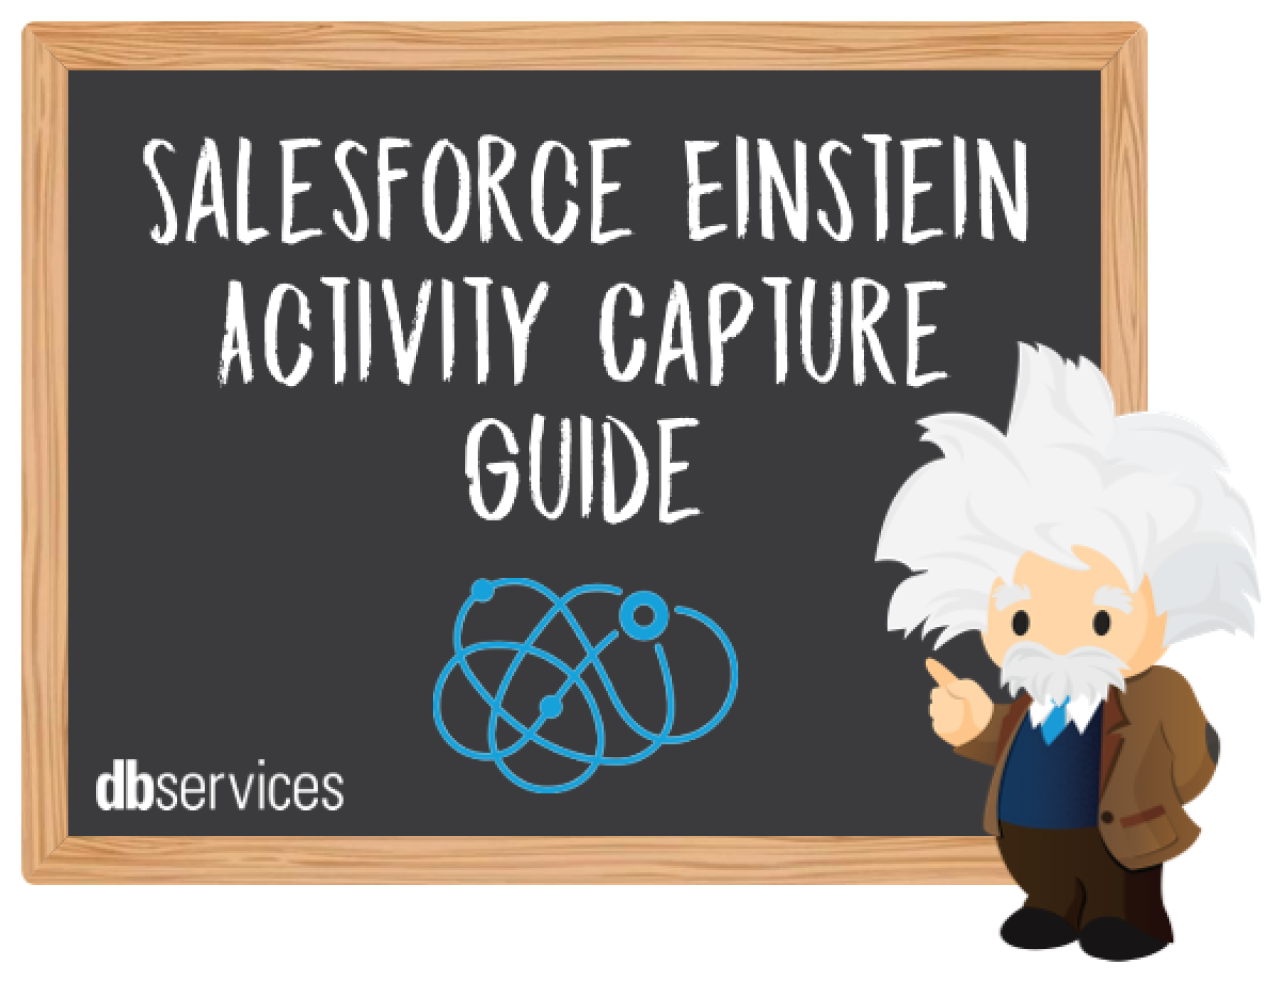 salesforce einstein activity capture guide.